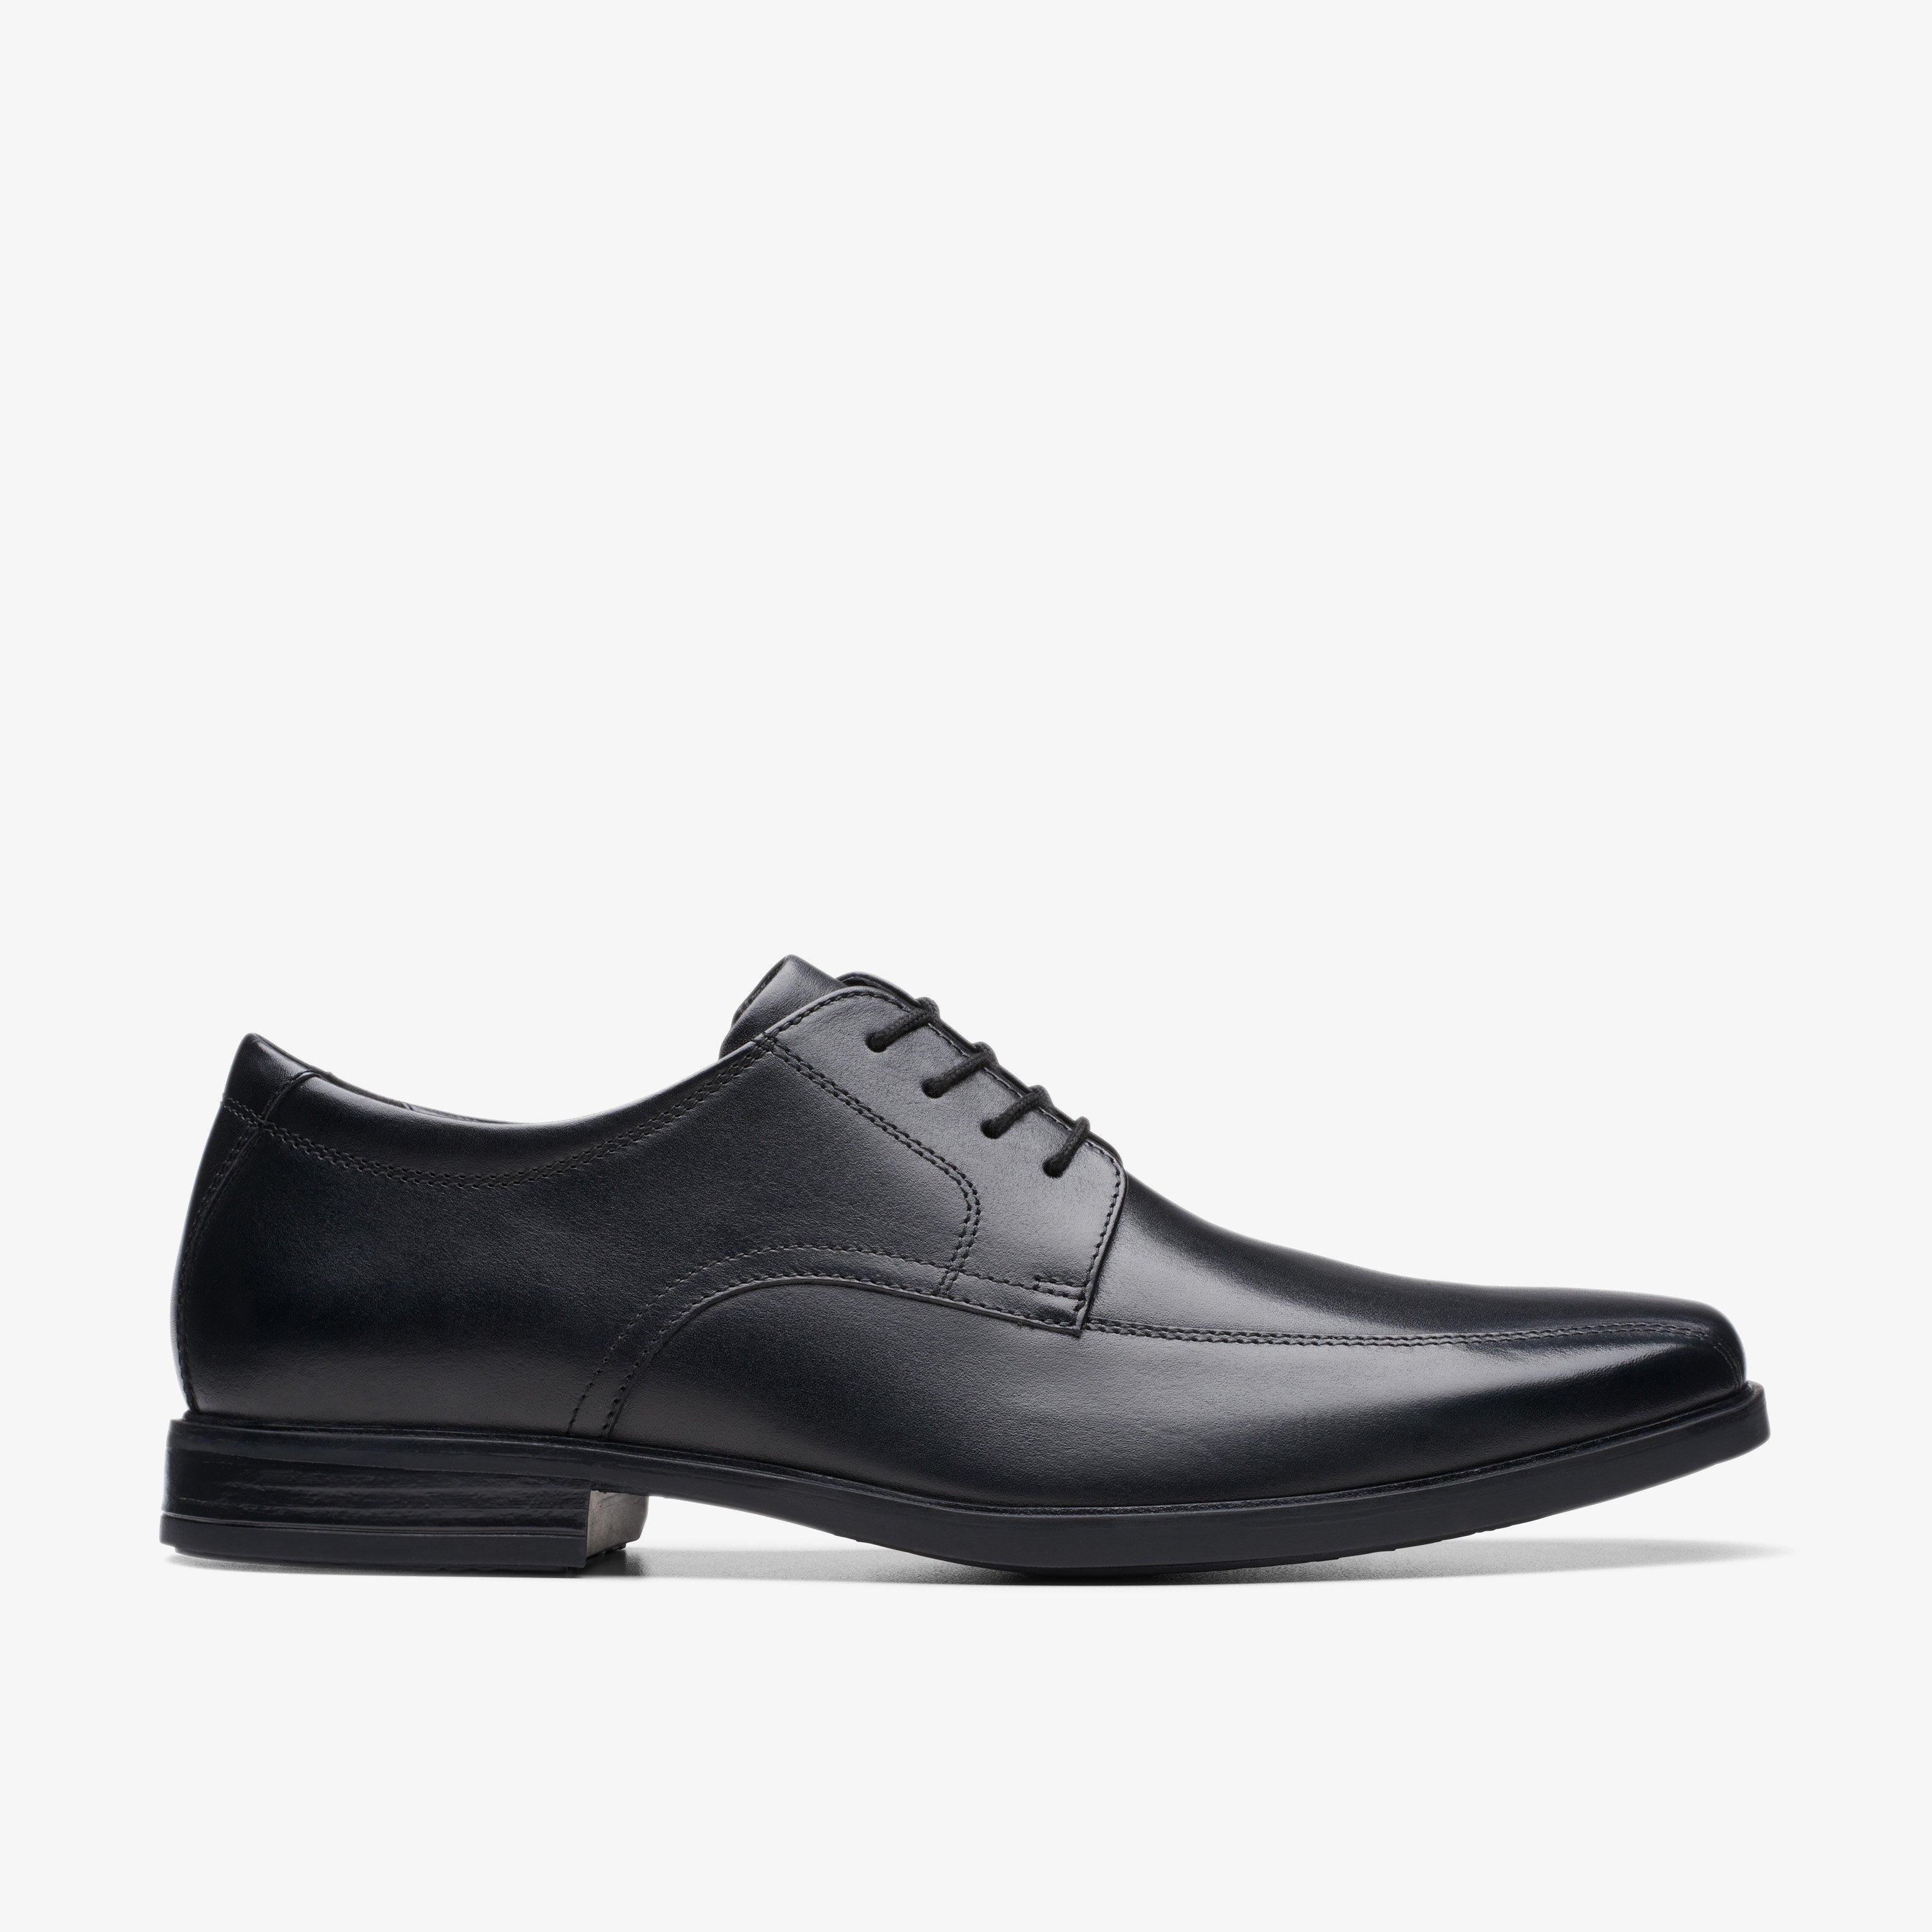 Men's Black Shoes - Black Leather Shoes for Men